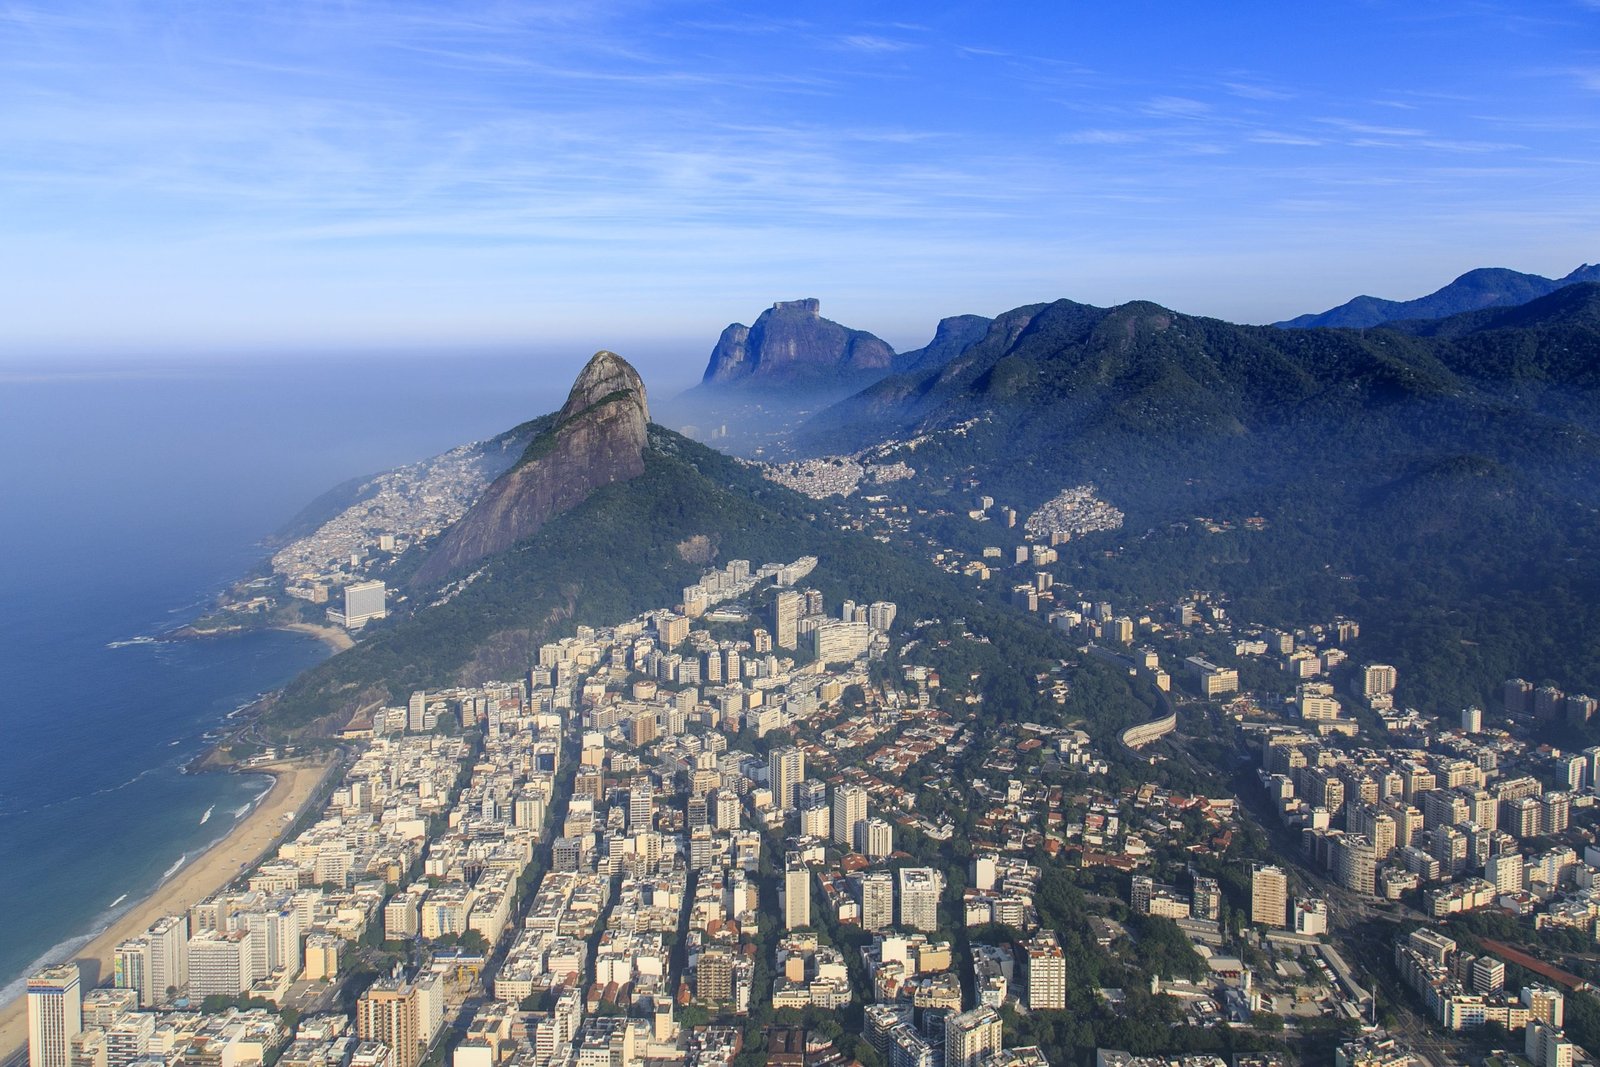 Leblon, Rio de Janeiro: A Complete Guide